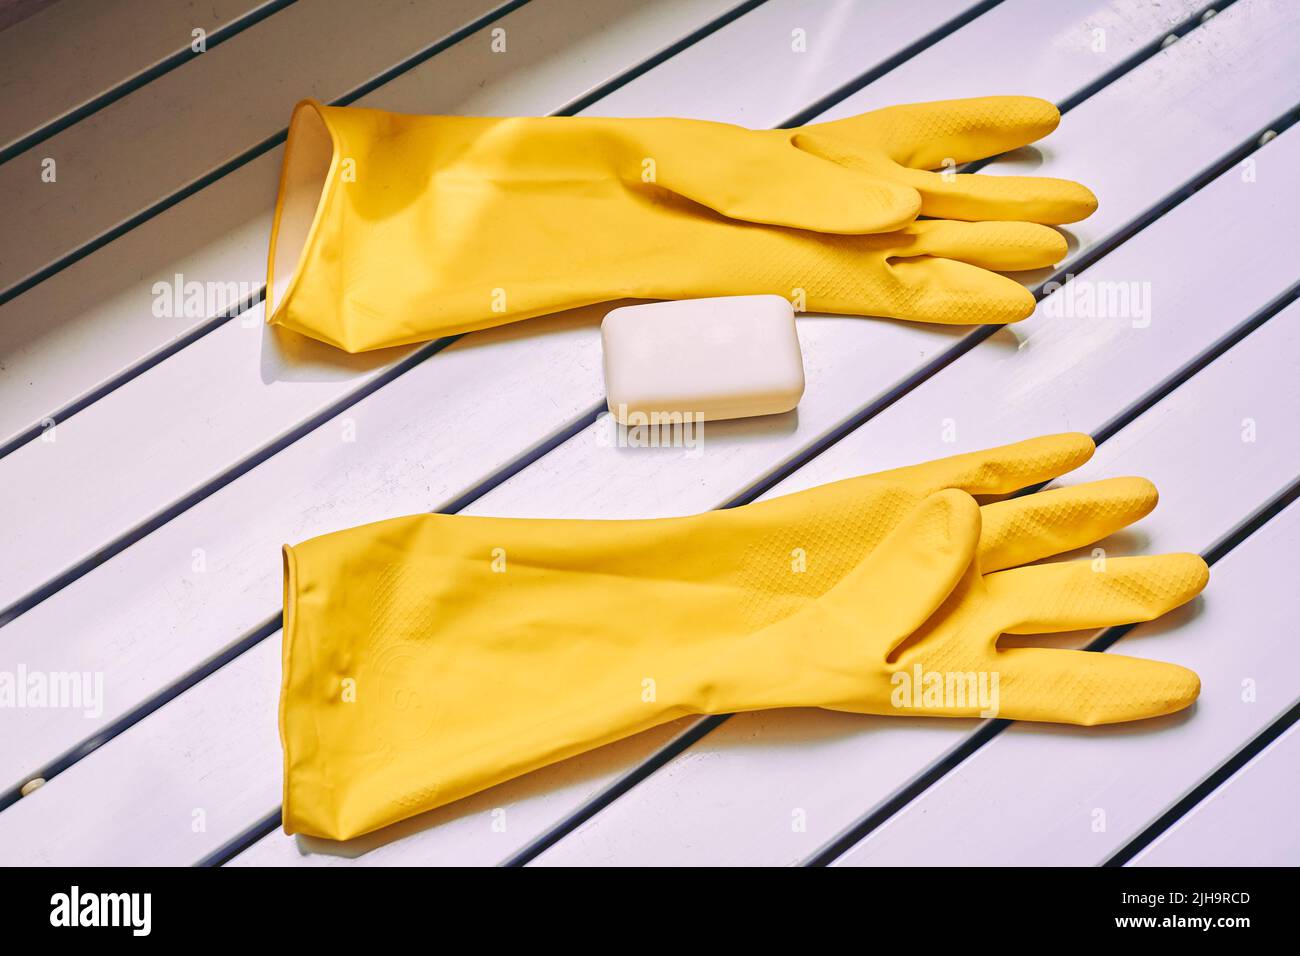 Guanti protettivi gialli in gomma e sapone. Un set per lavare qualsiasi cosa Foto Stock